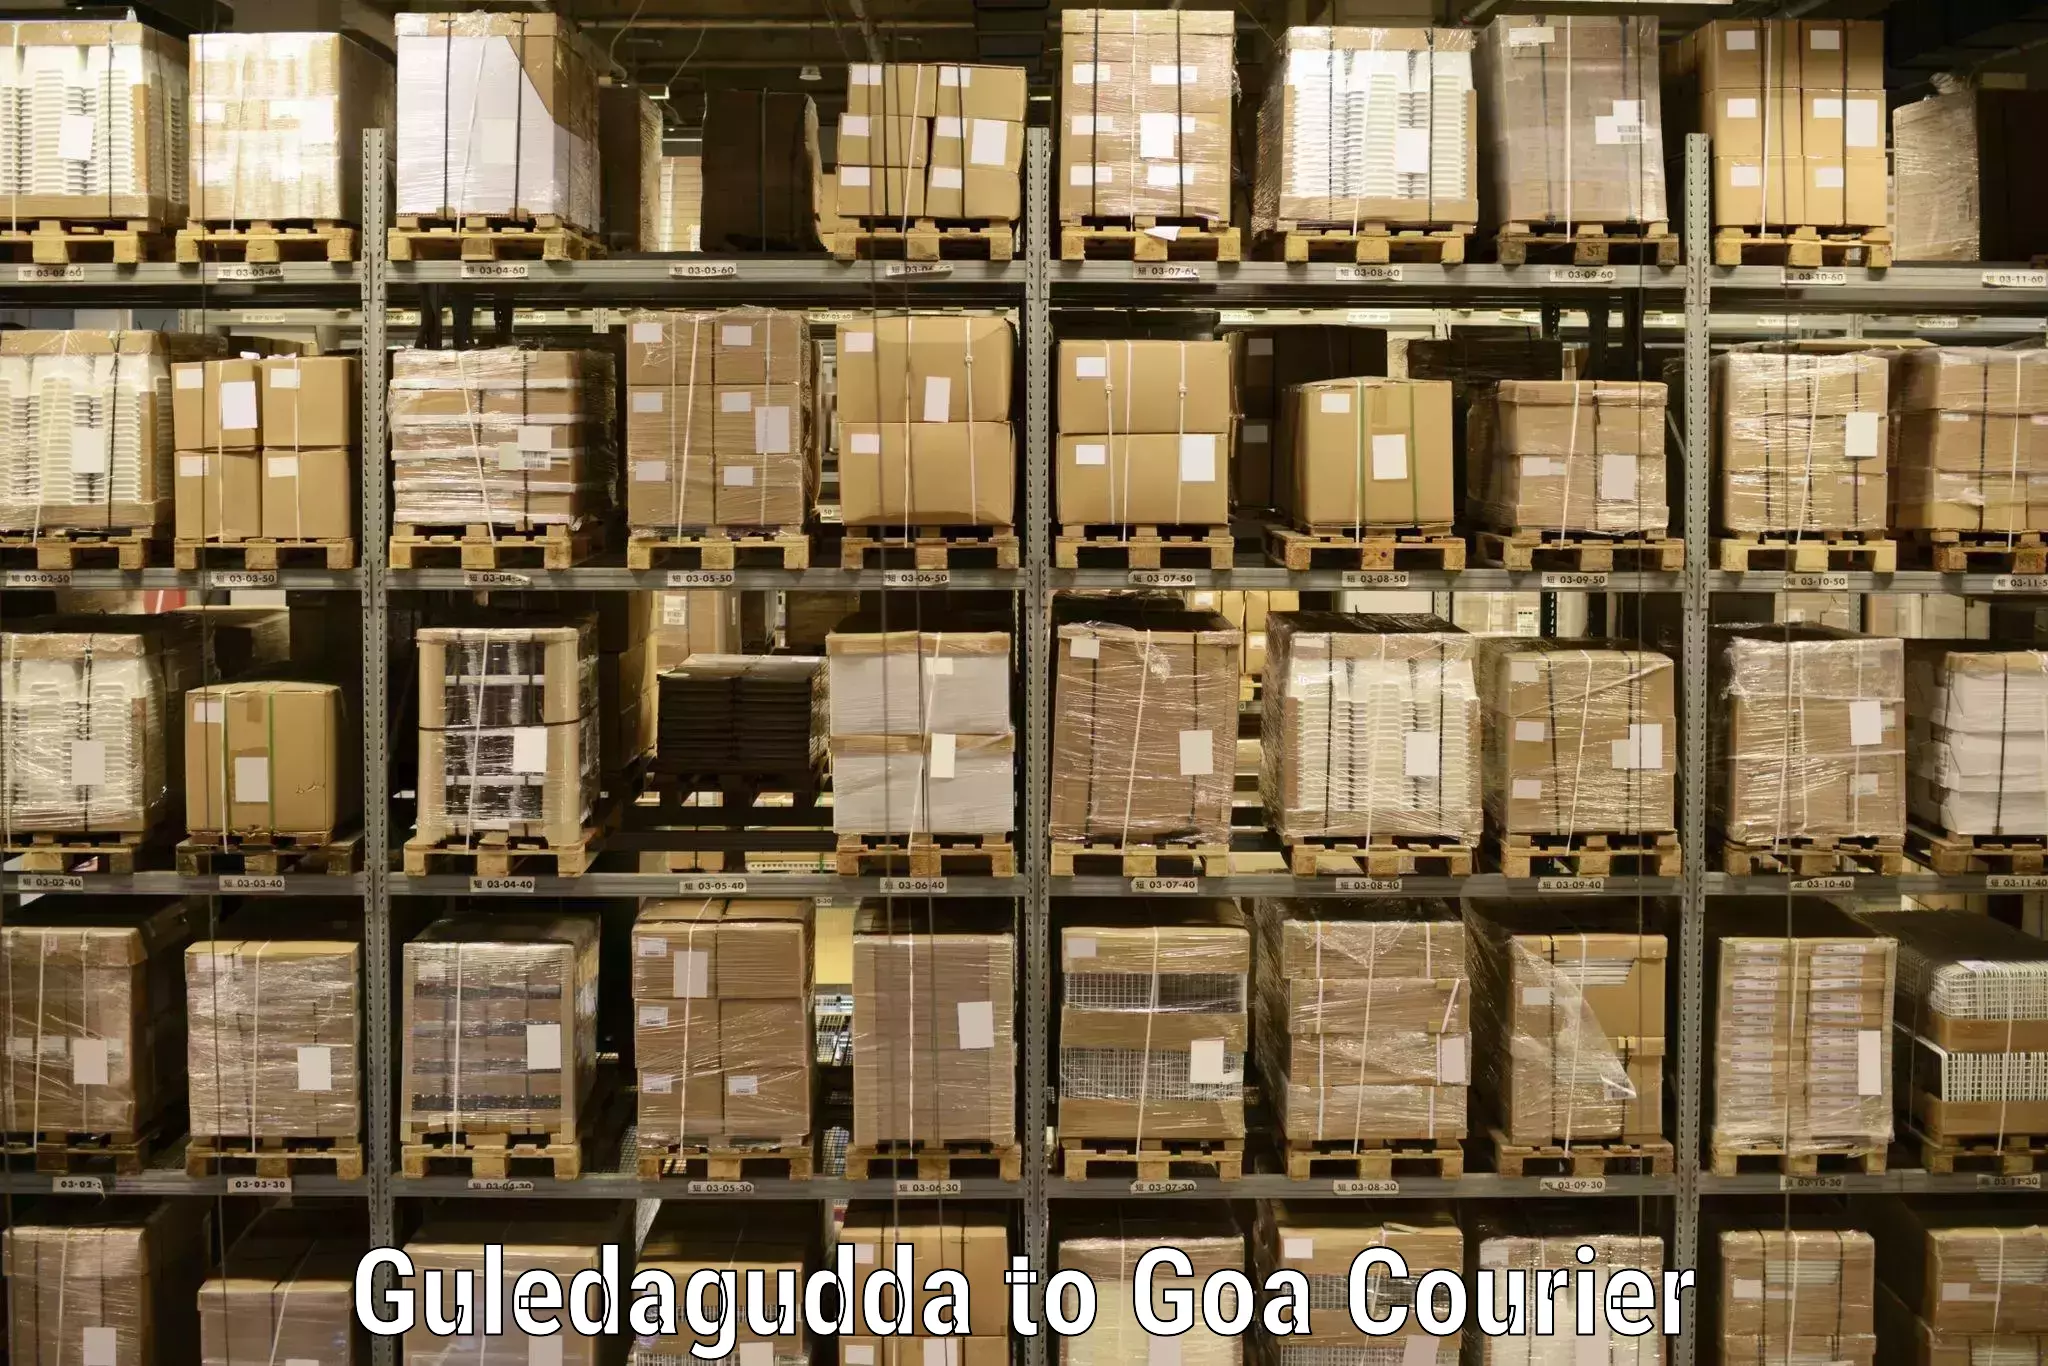 Comprehensive freight services Guledagudda to Bicholim